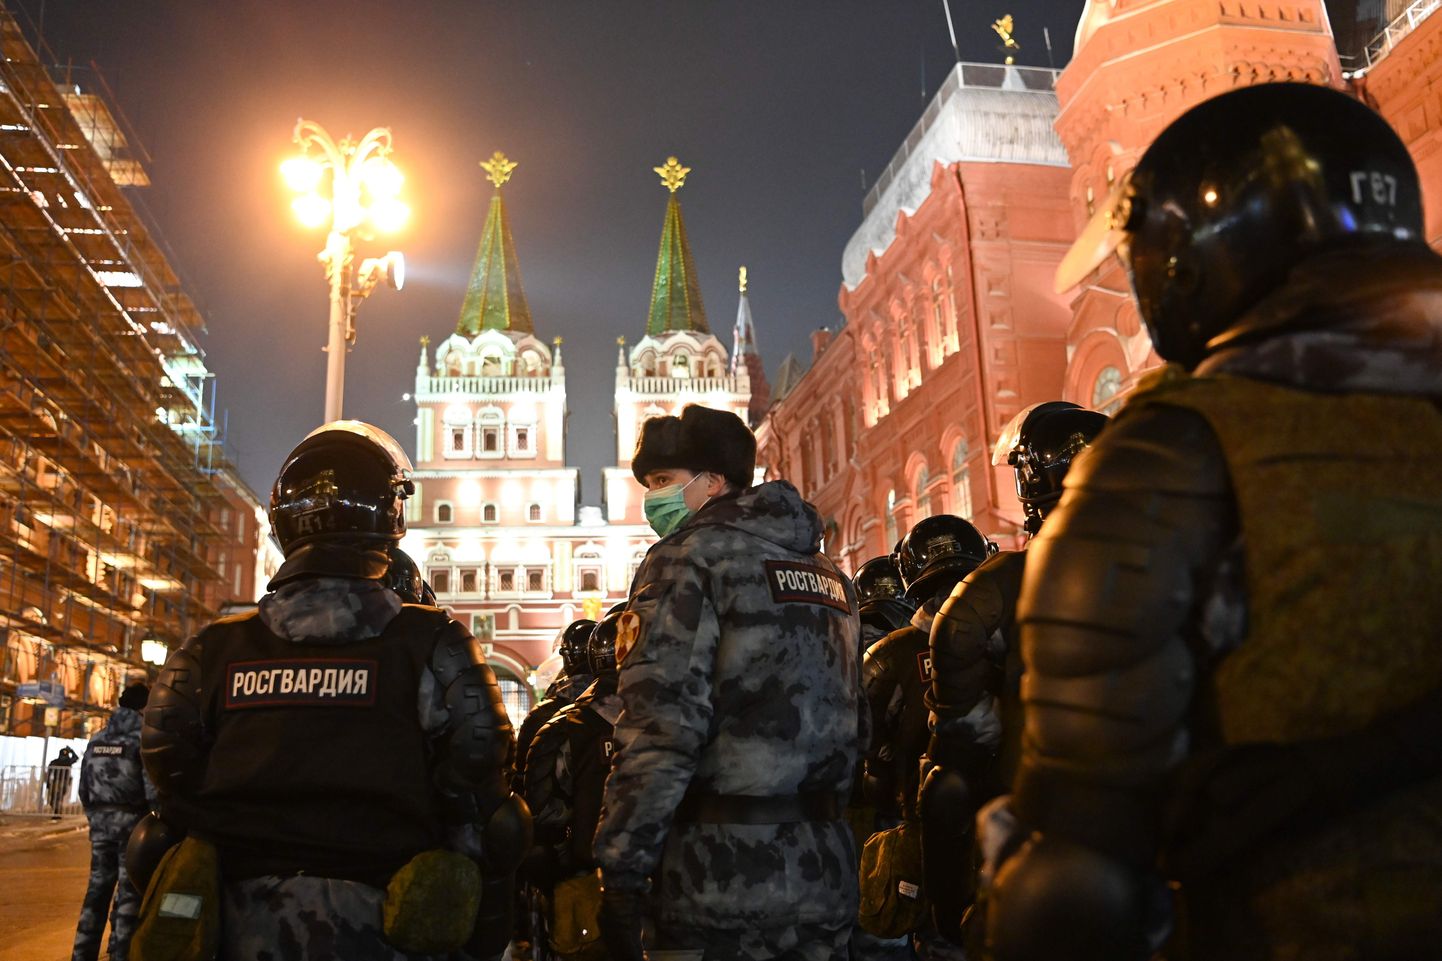 Venemaa rahvuskaardi sõdurid 2. veebruaril 2021 Moskva Punasel väljakul opositsioonijuht Aleksei Navalnõi toetajate protesti laiali ajamas